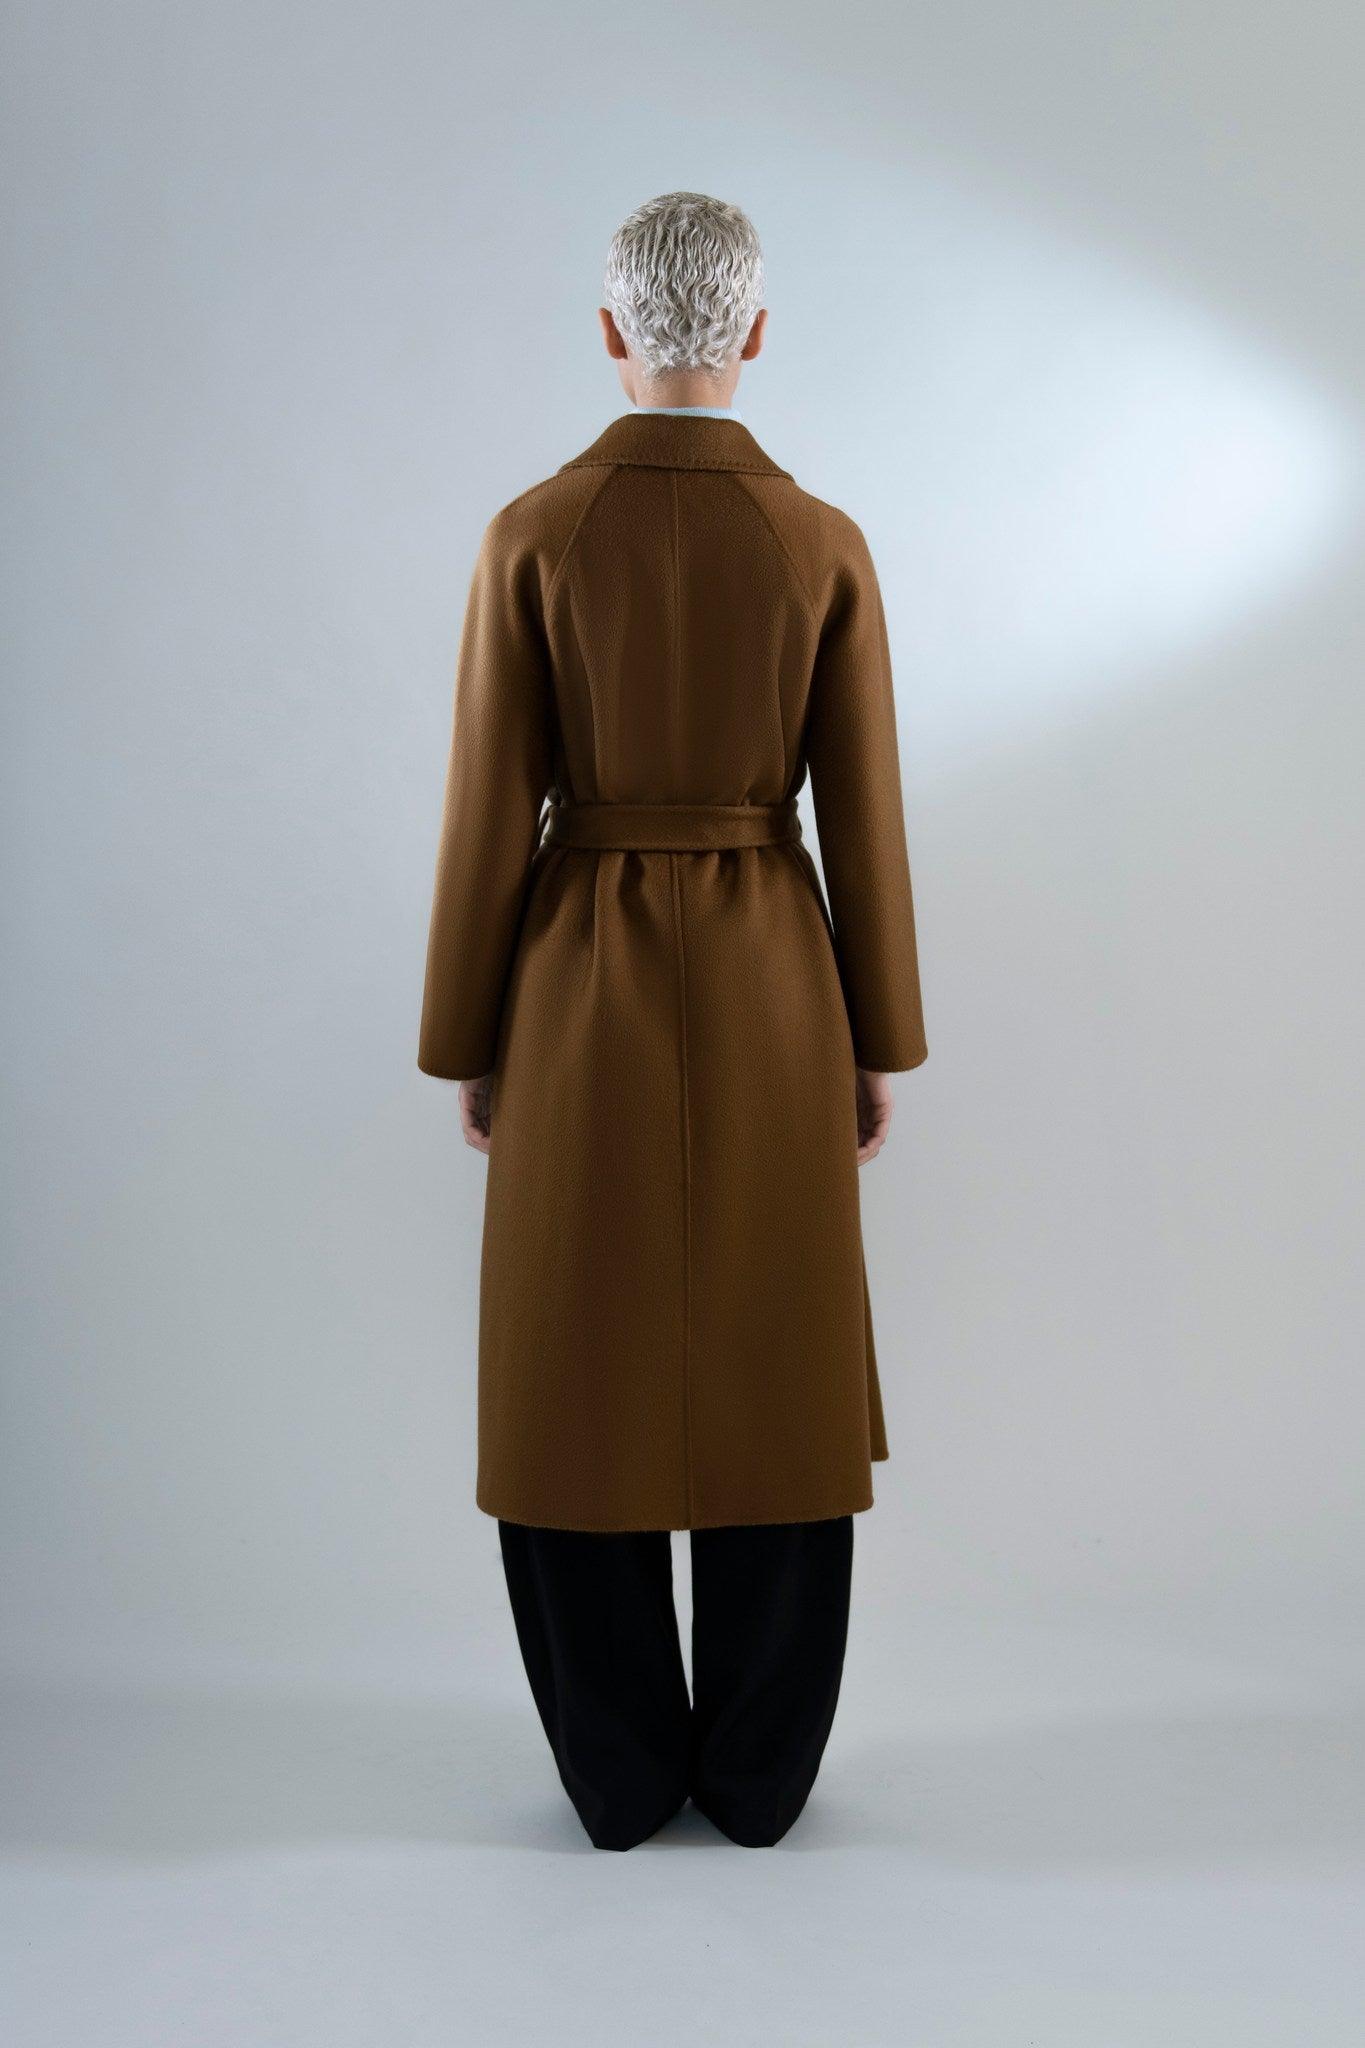 Agape Coat in Cashmere - Tutussie